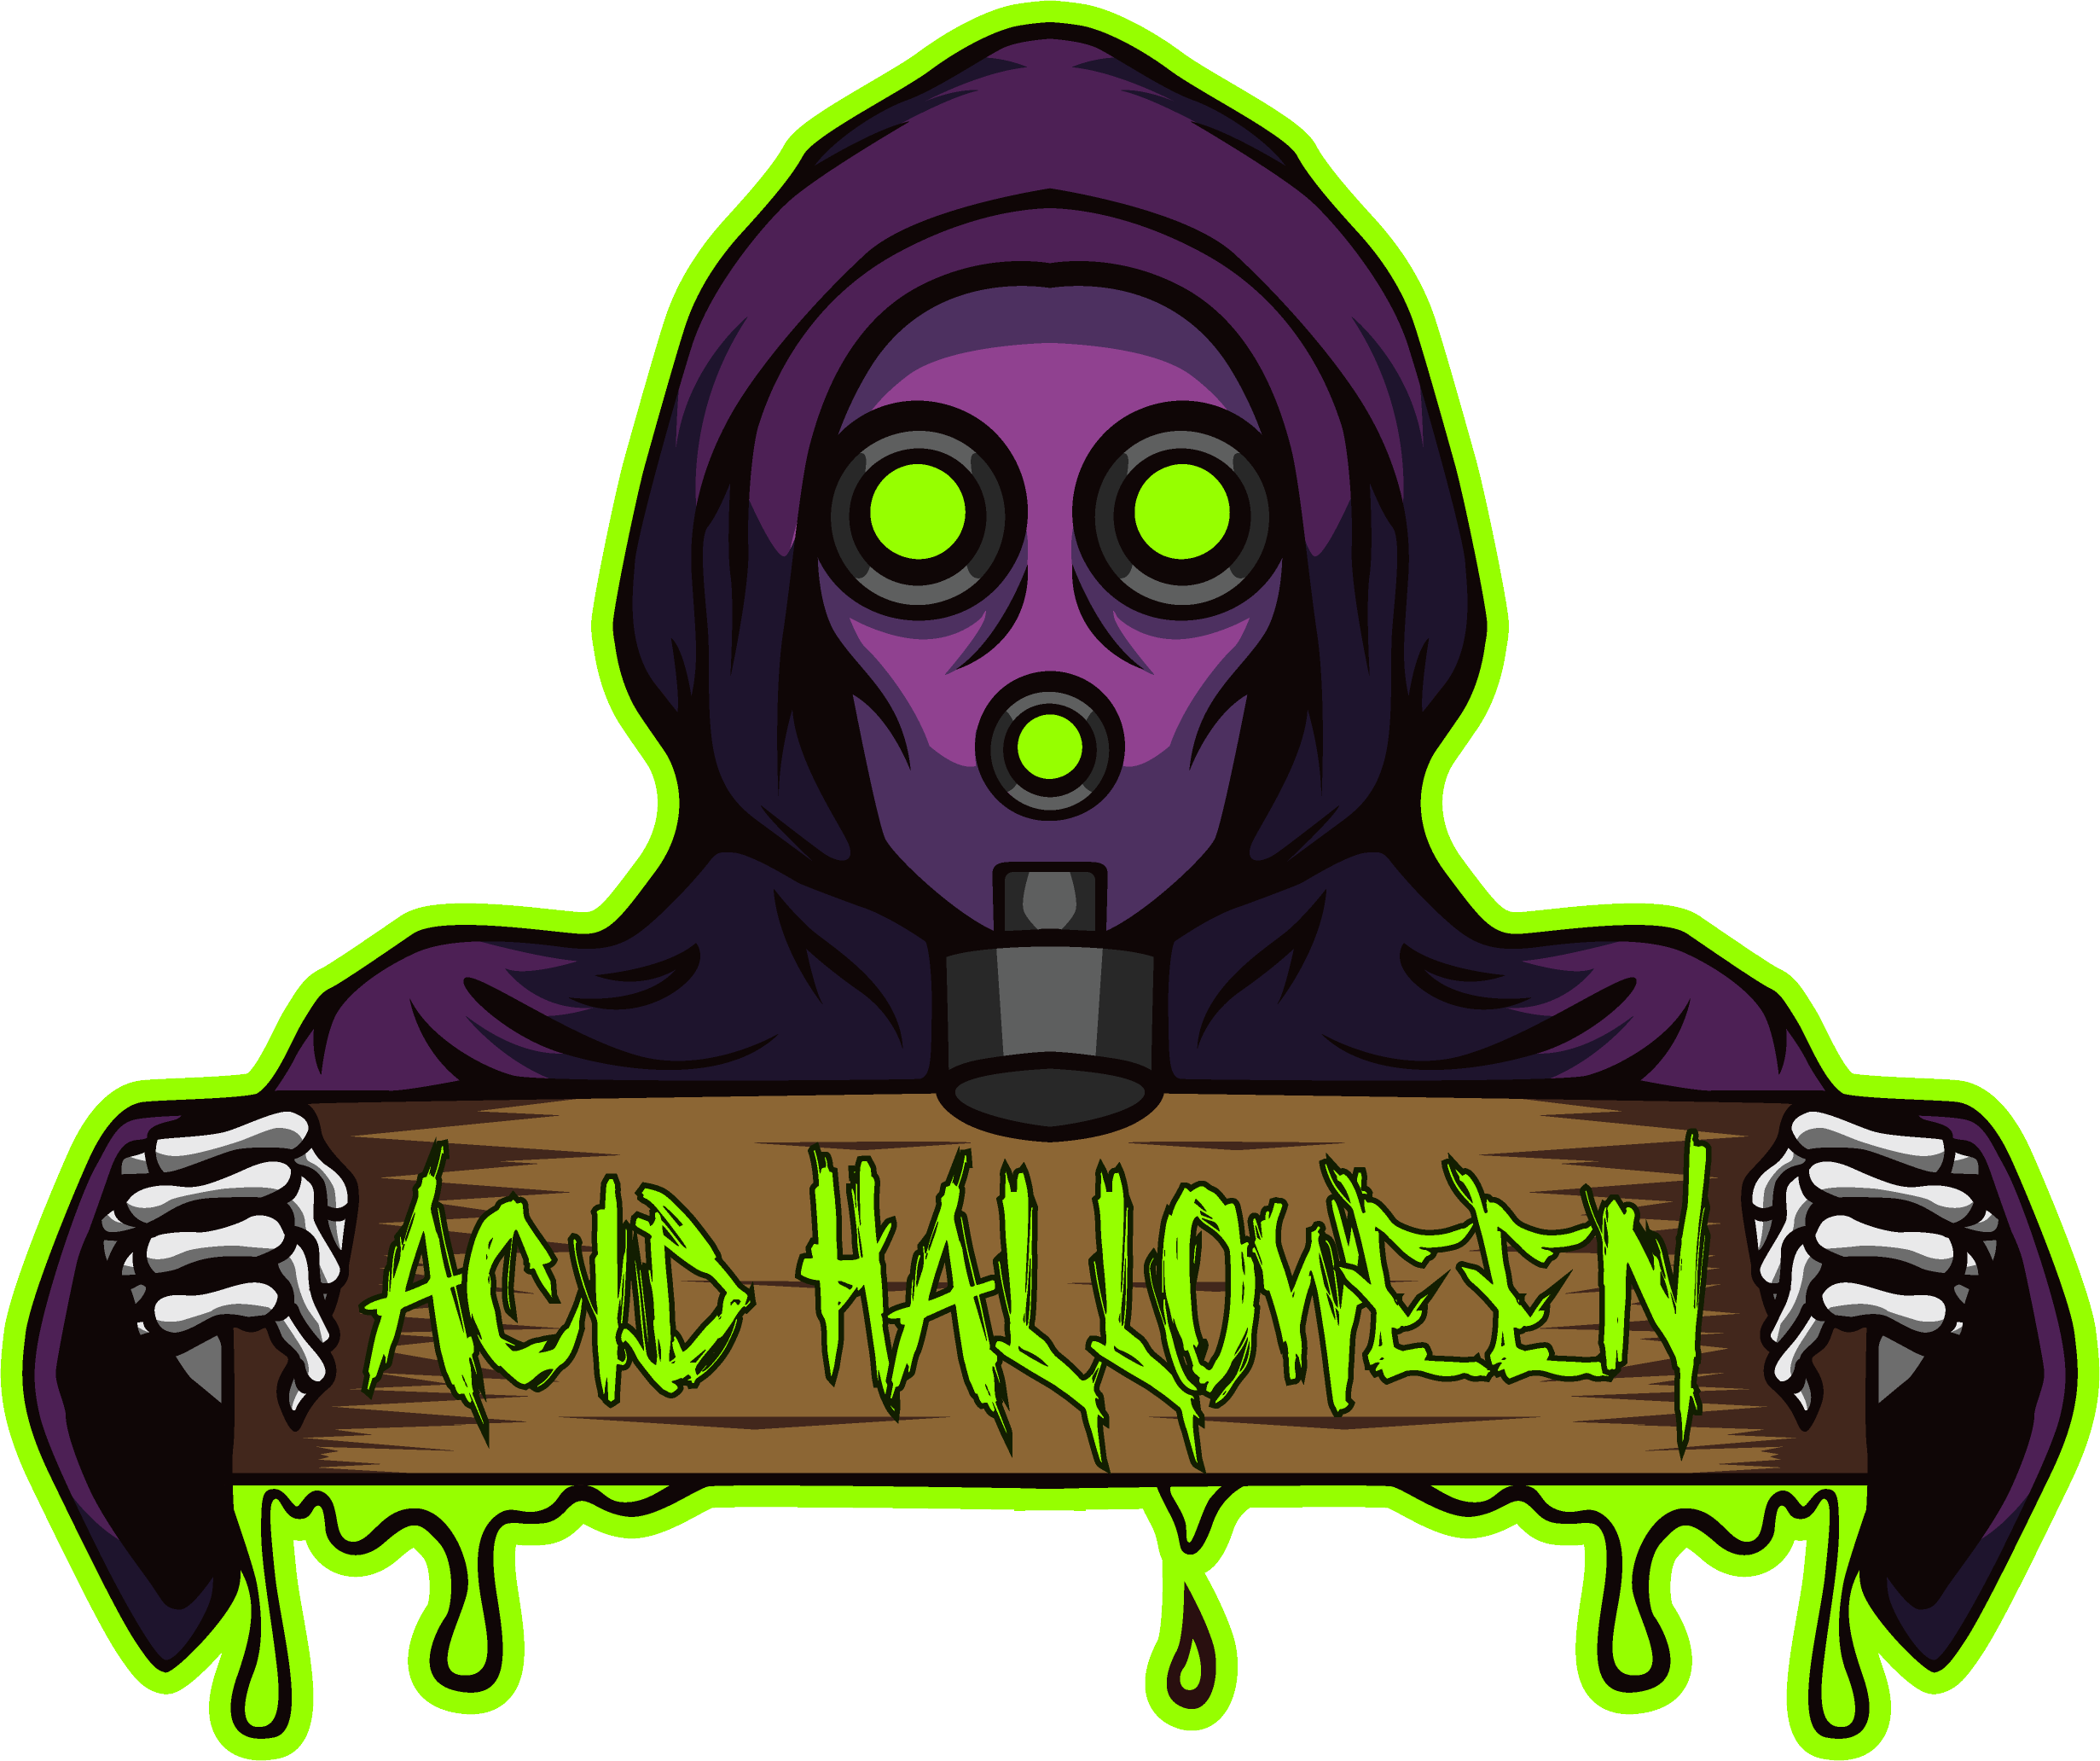 Acid Halloween Masks are Scary AF